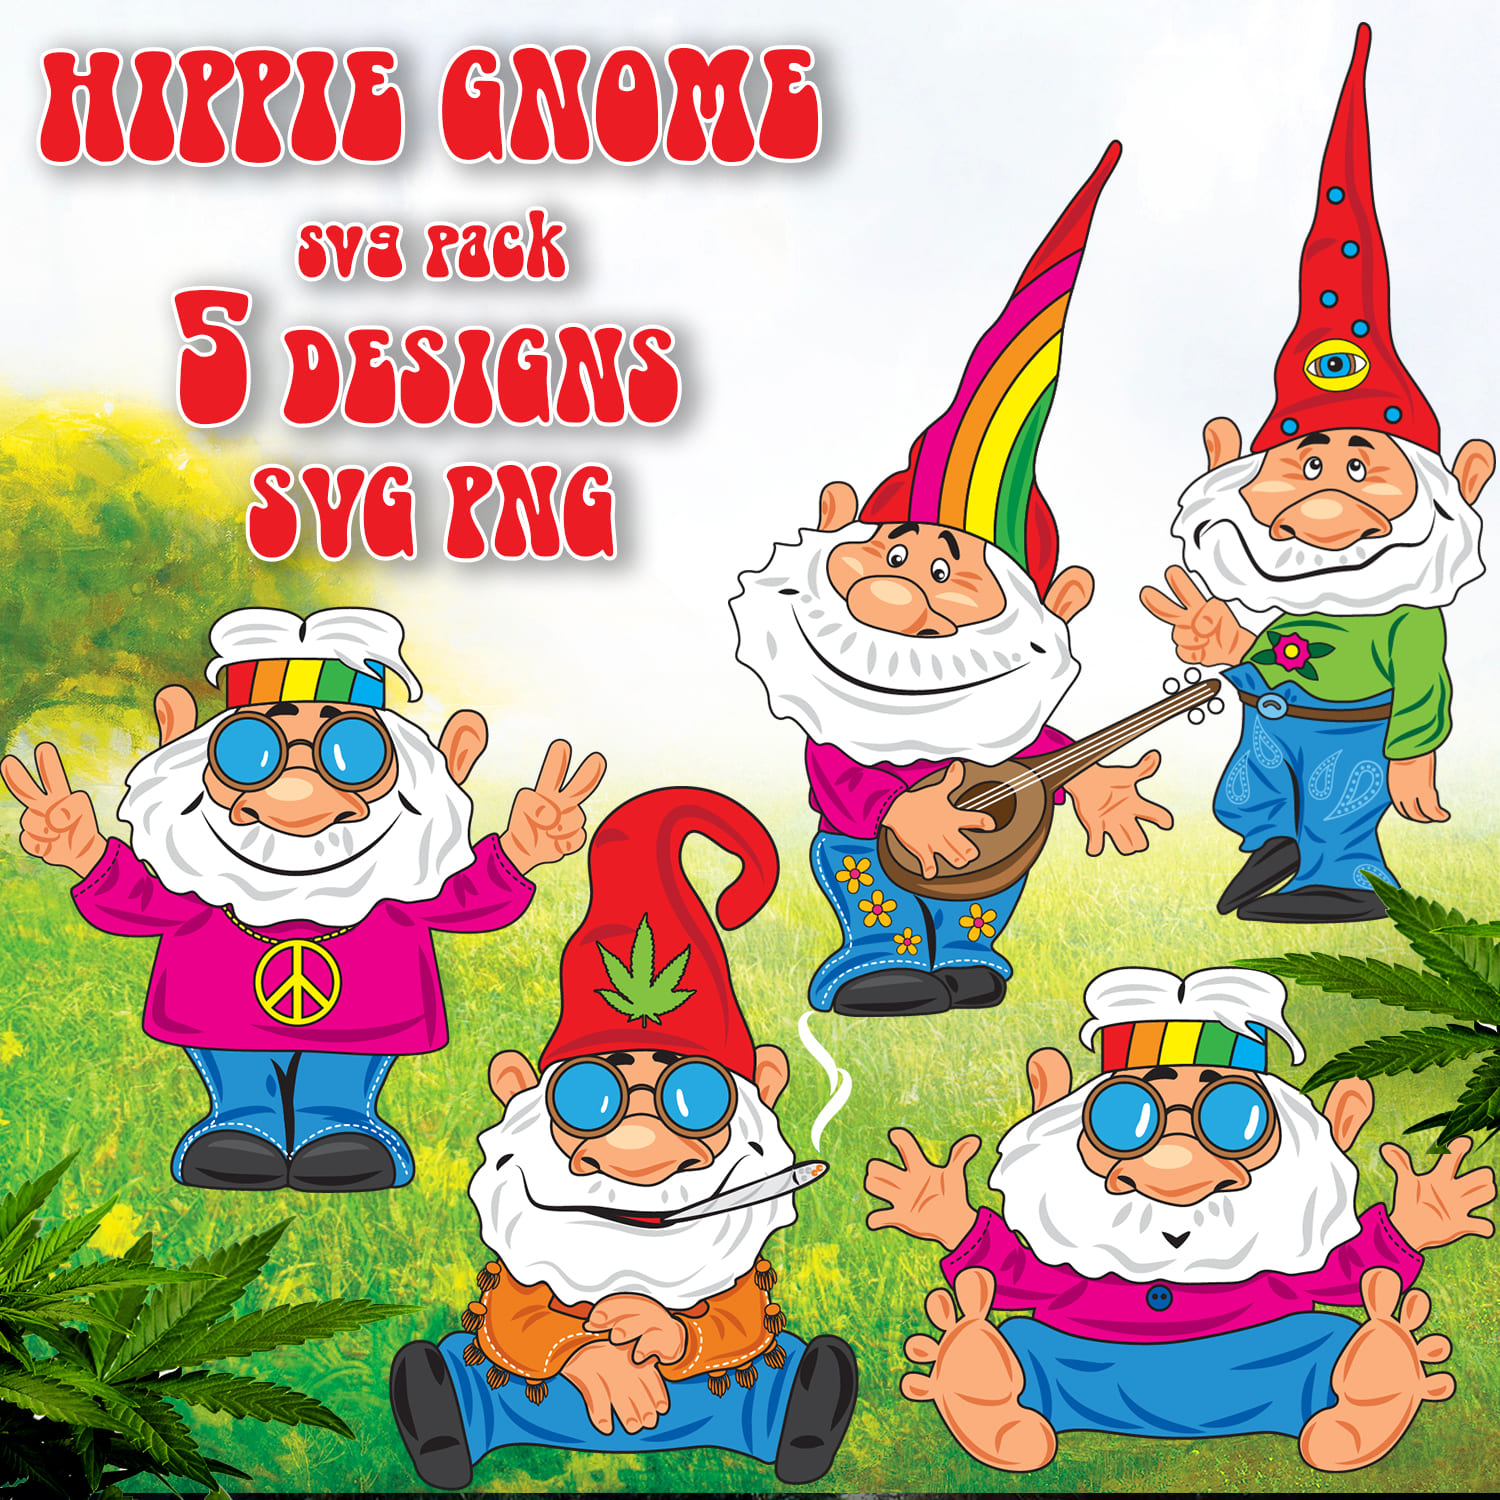 Hippie Gnome SVG T-shirt Designs Bundle - main image preview.